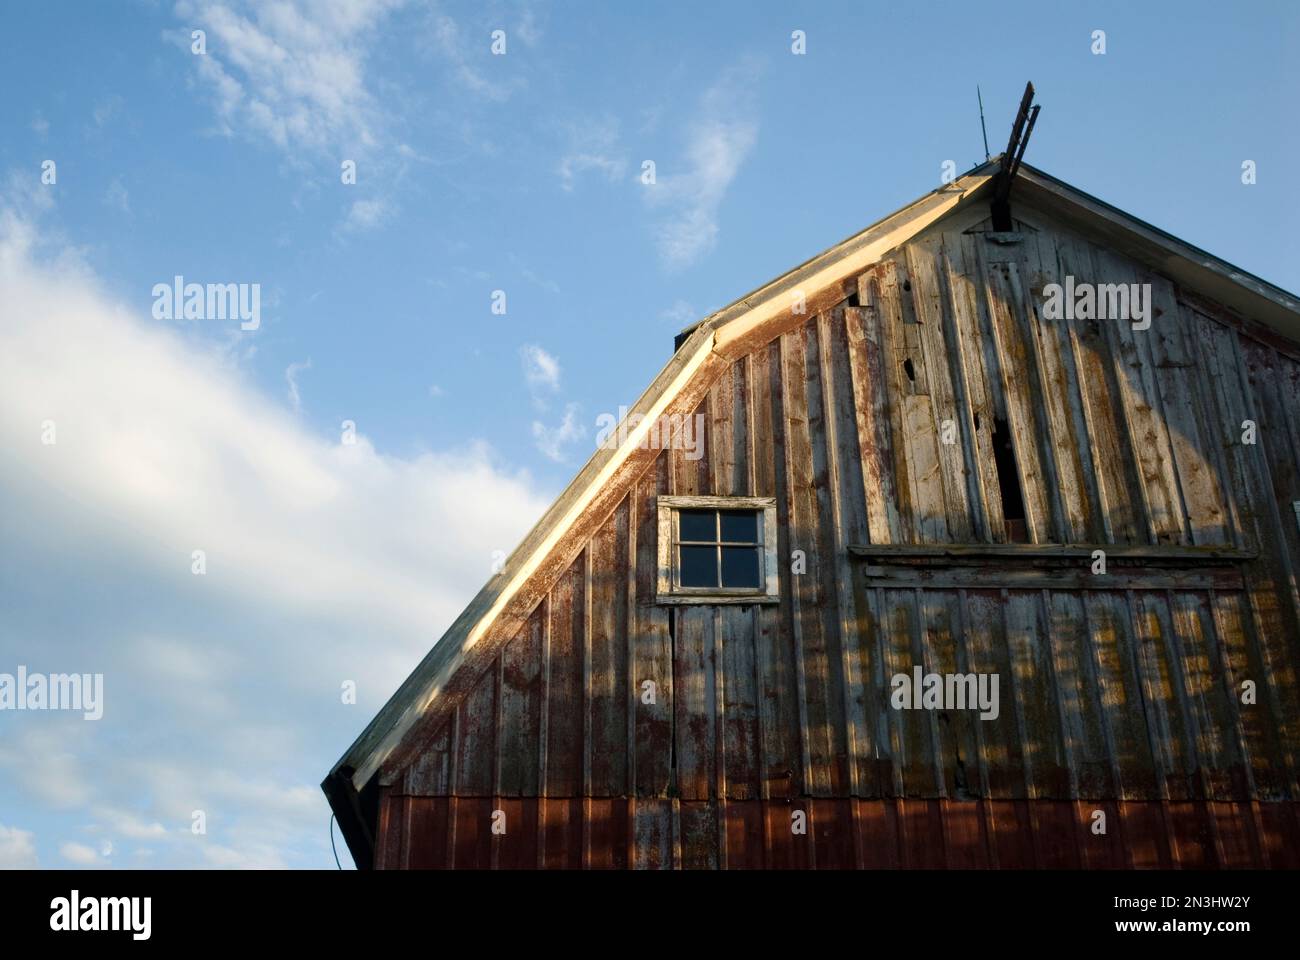 Dettaglio architettonico di un vecchio fienile con facciata intemprata in una fattoria vicino a Princeton, Nebraska, USA; Princeton, Nebraska, Stati Uniti d'America Foto Stock